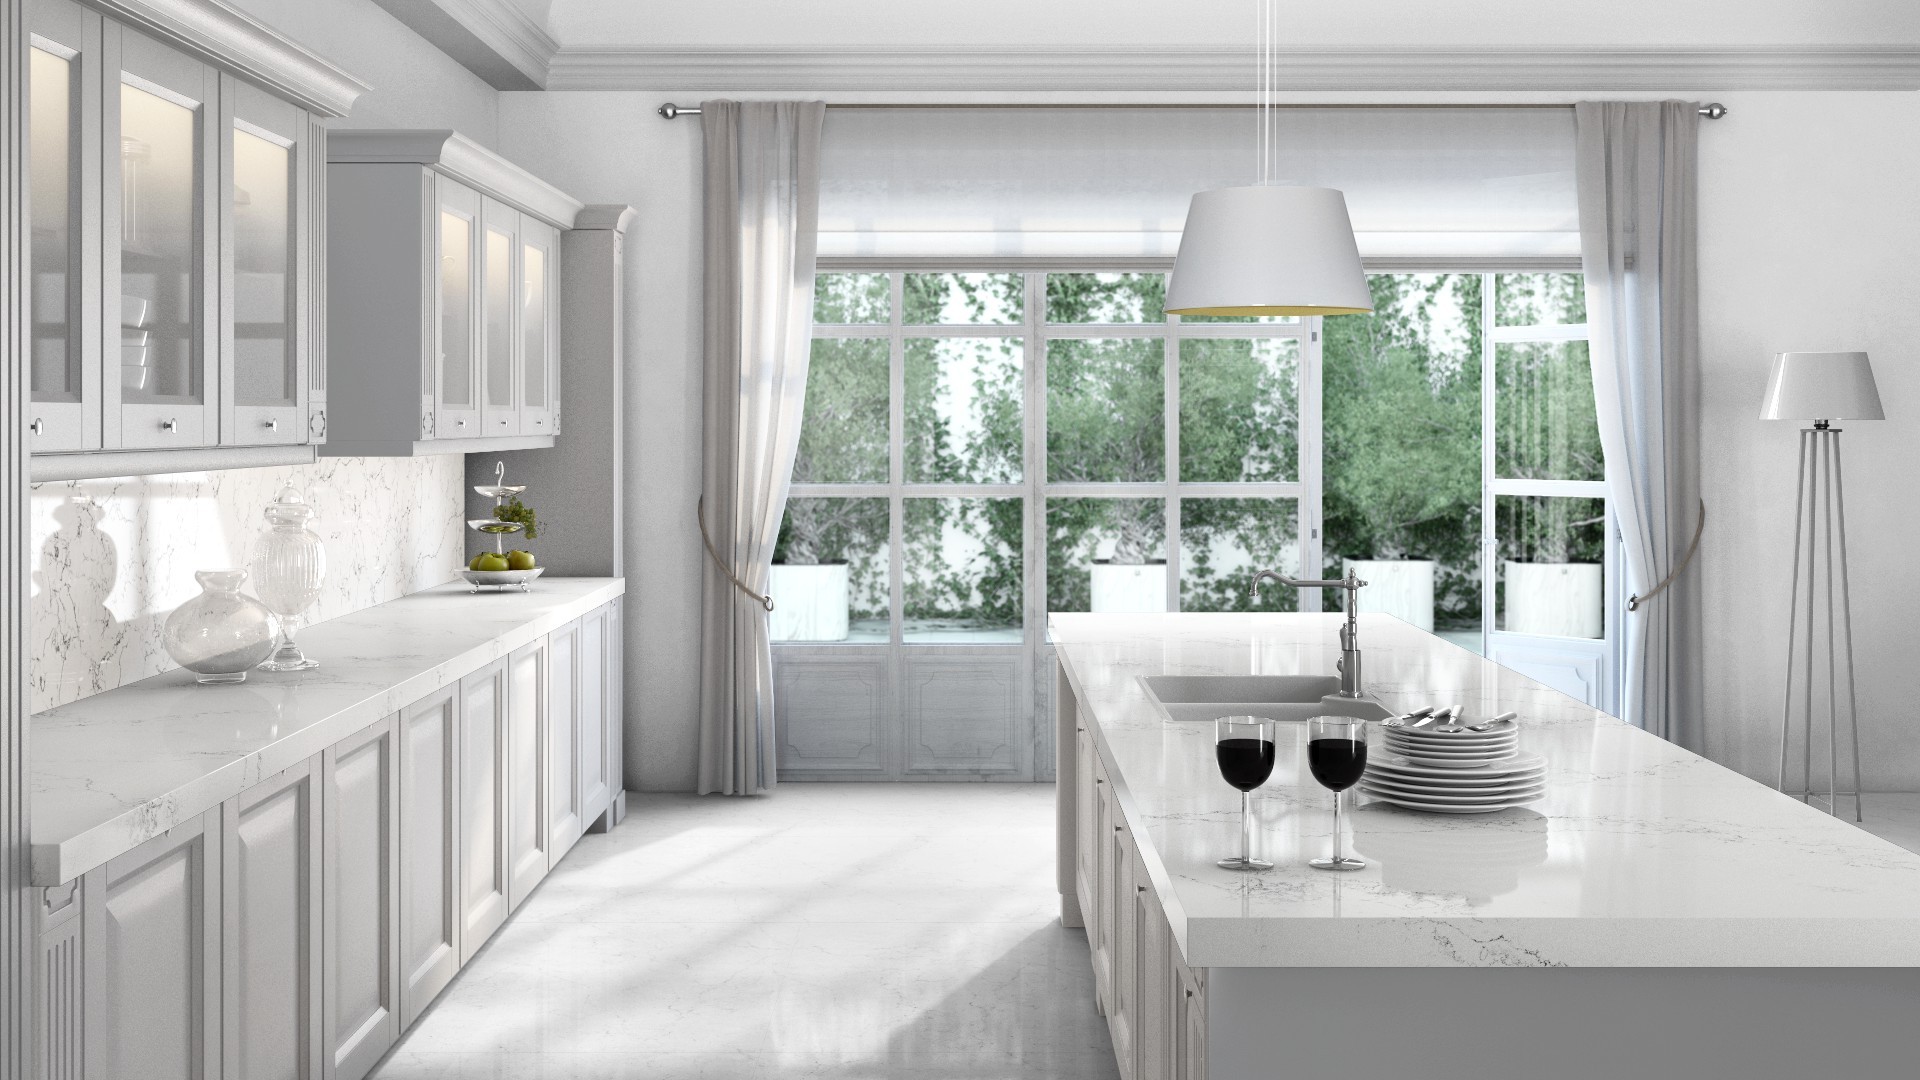 White Quartz Countertops Caesarstone, Pure White Kitchen Countertops